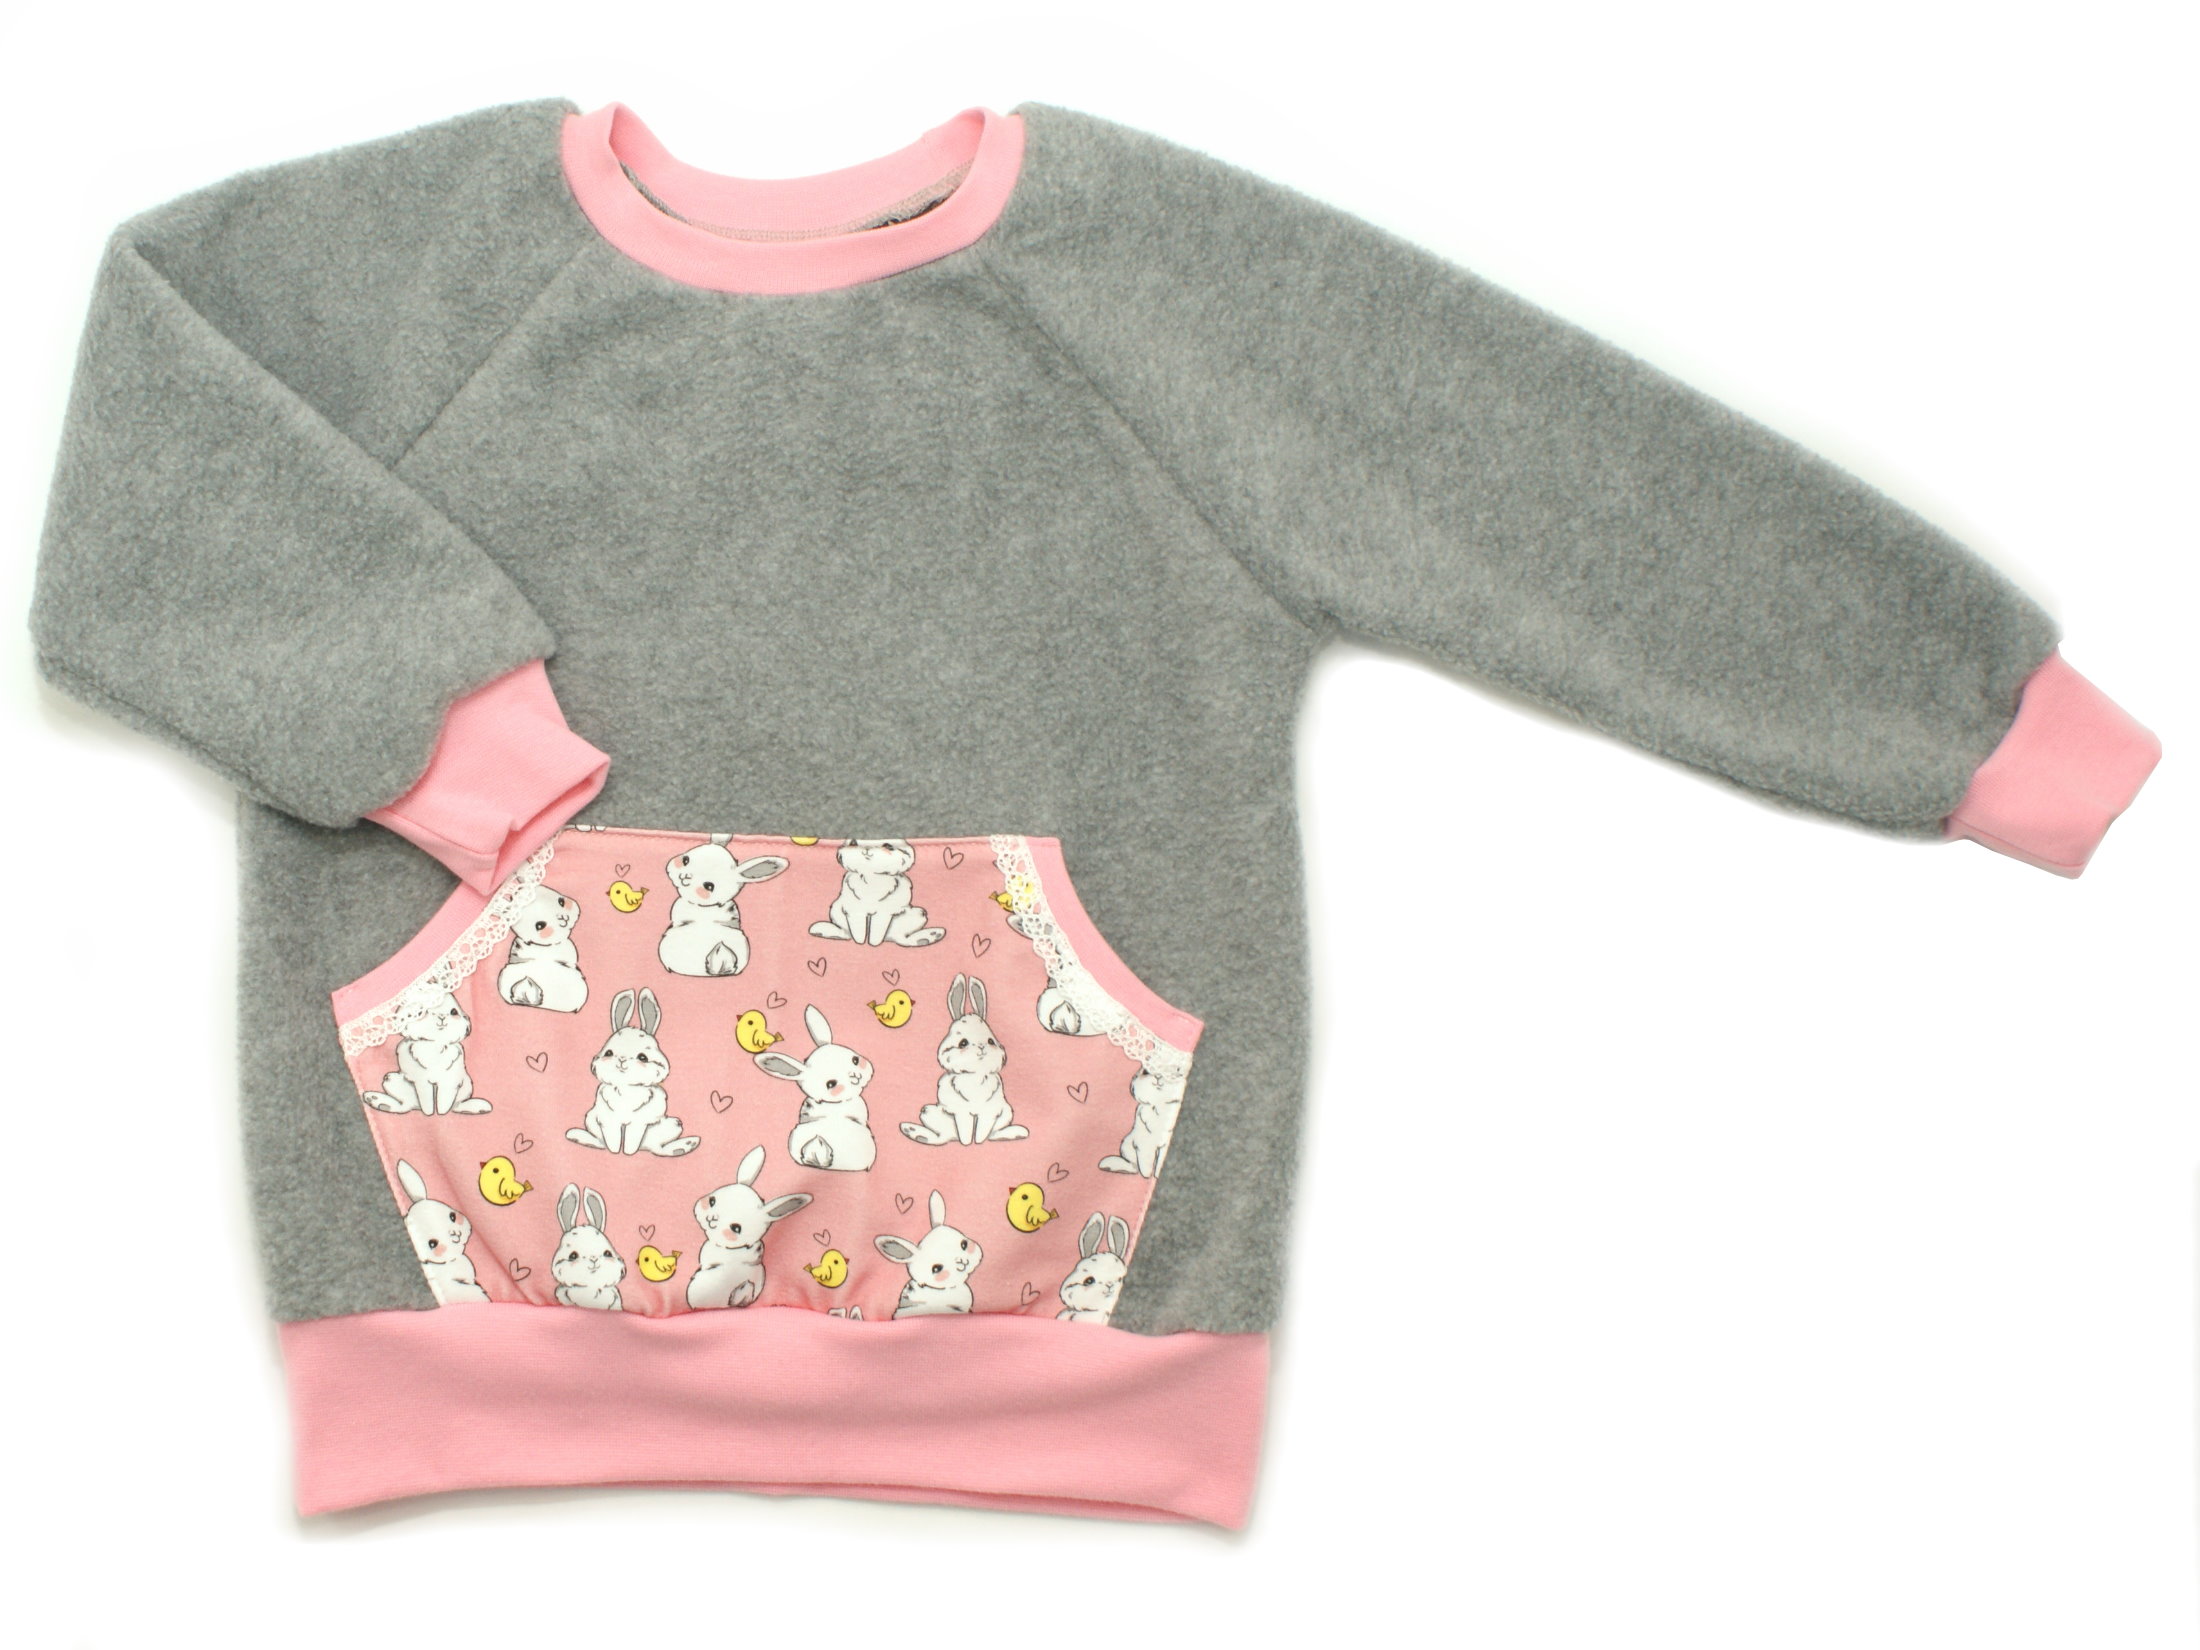 Kinder Fleecepullover grau mit Tasche "Kleiner Hase" rosa